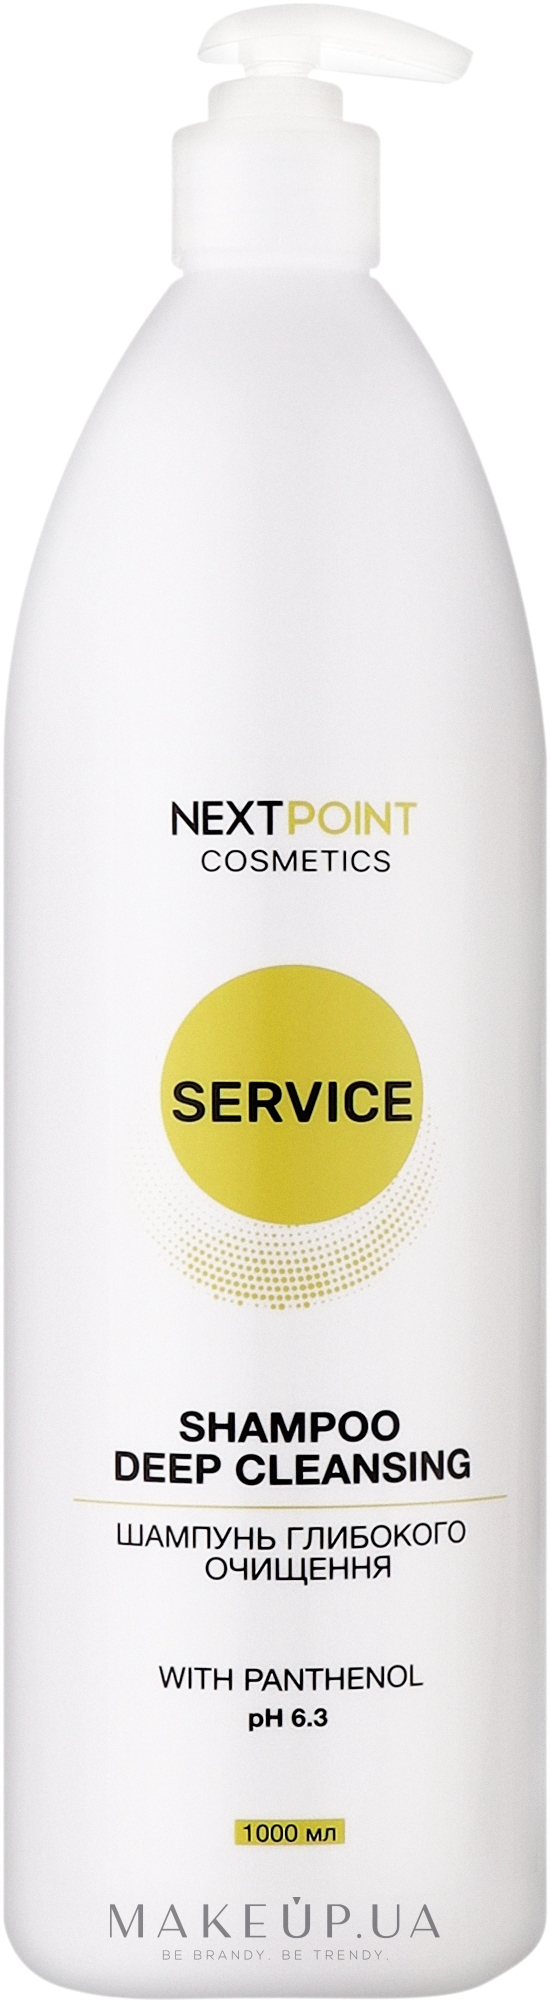 Шампунь глубокого очищения - Nextpoint Cosmetics Service Deep Cleansing Shampoo — фото 1000ml